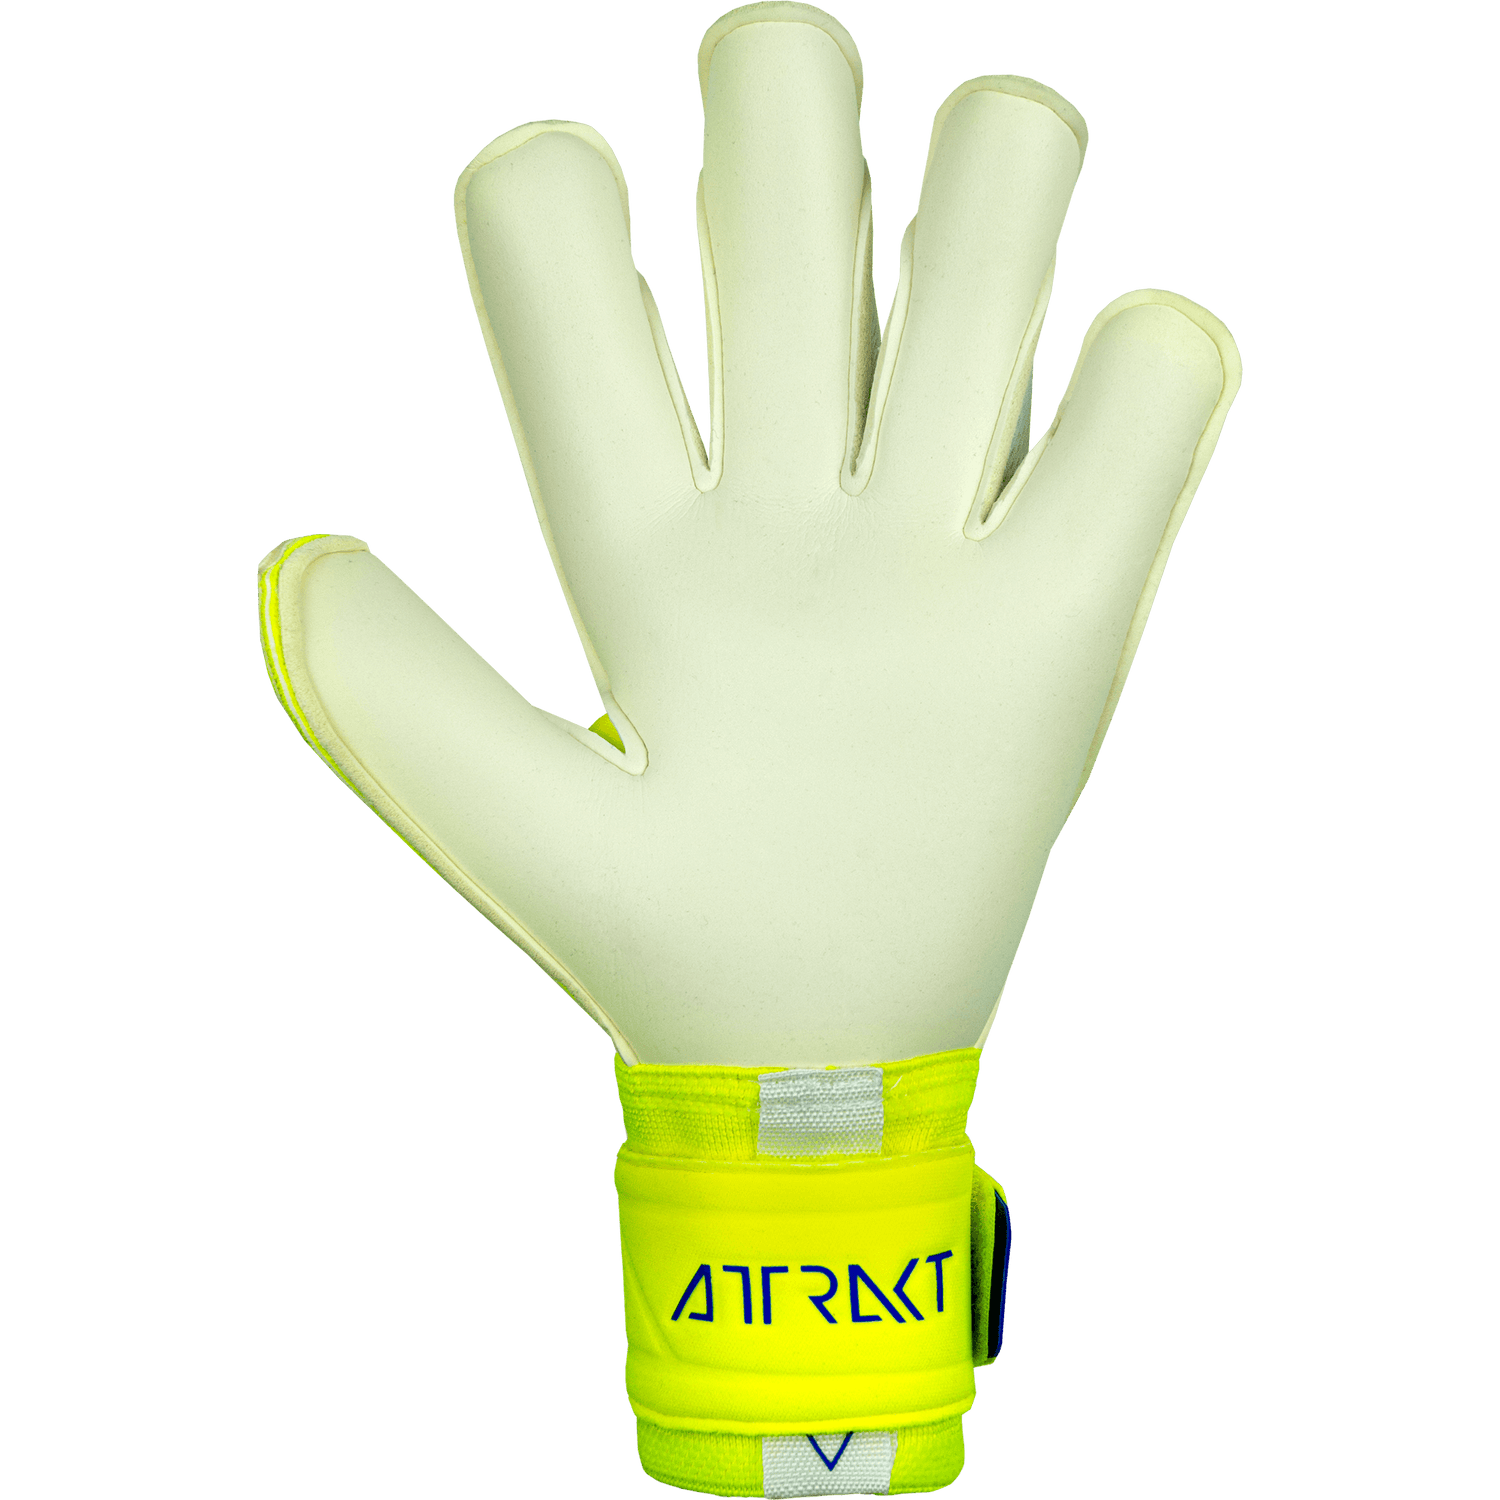 Reusch Attrakt Gold X Alpha Goalkeeper Gloves - Yellow-Blue-White (Single - Inner)